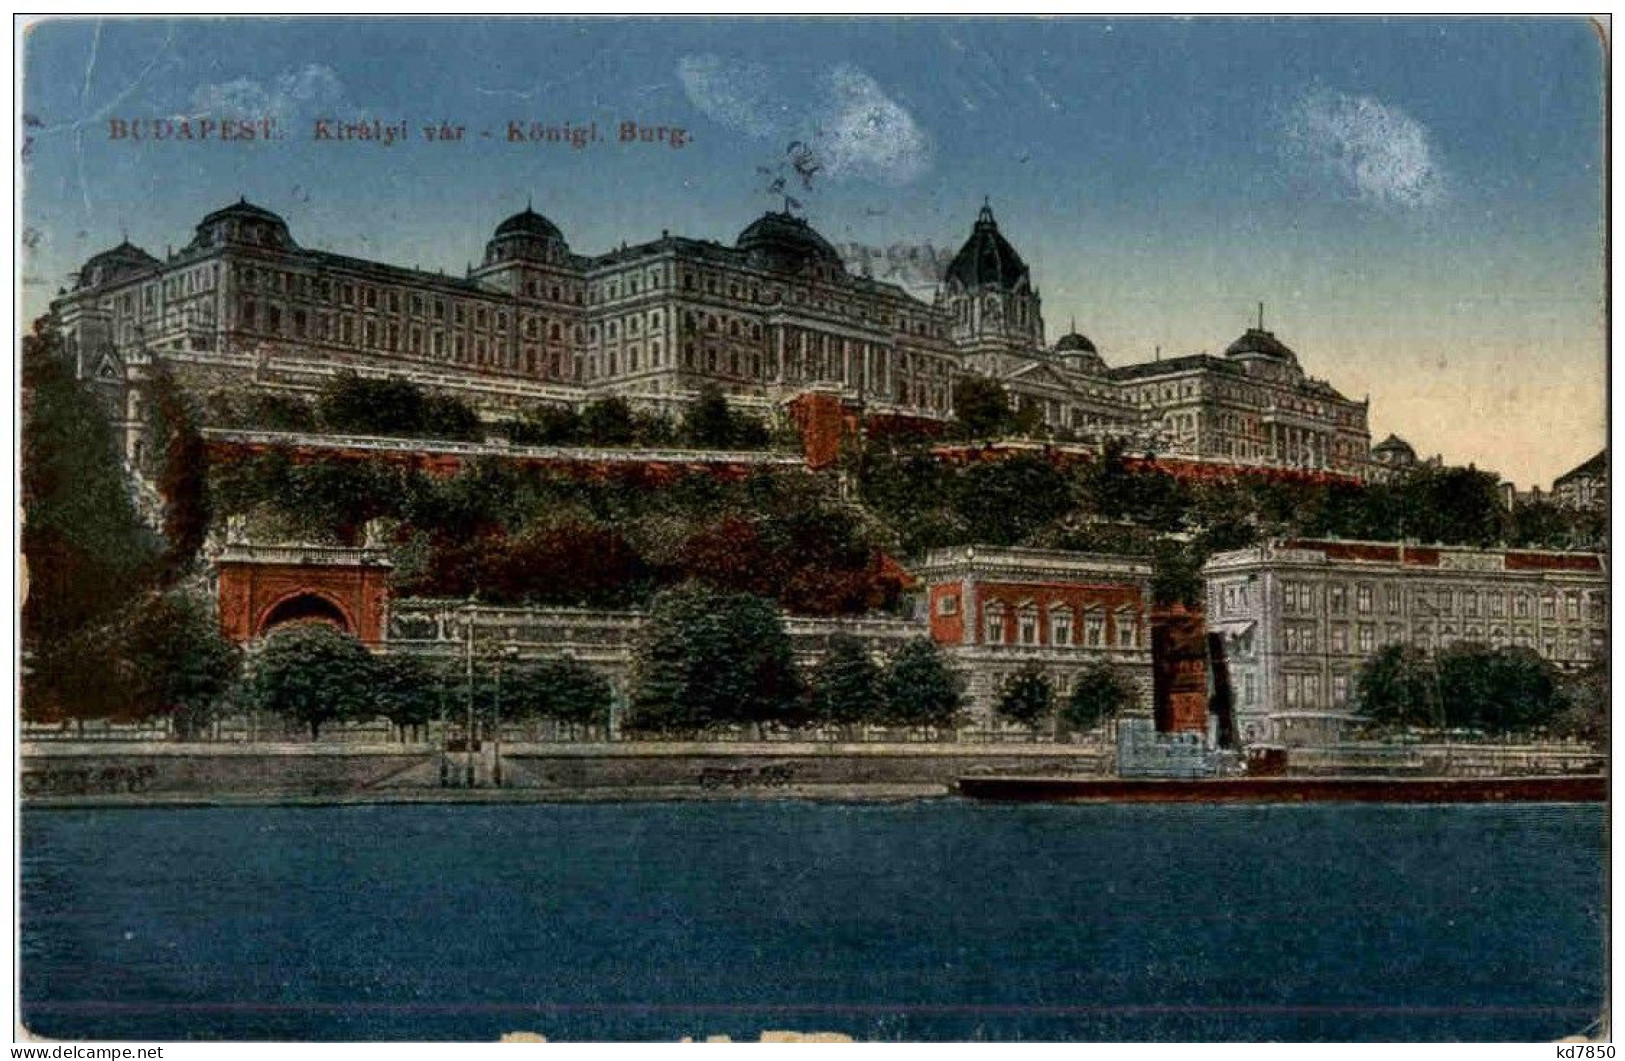 Budapest - Königl. Burg - Hungary